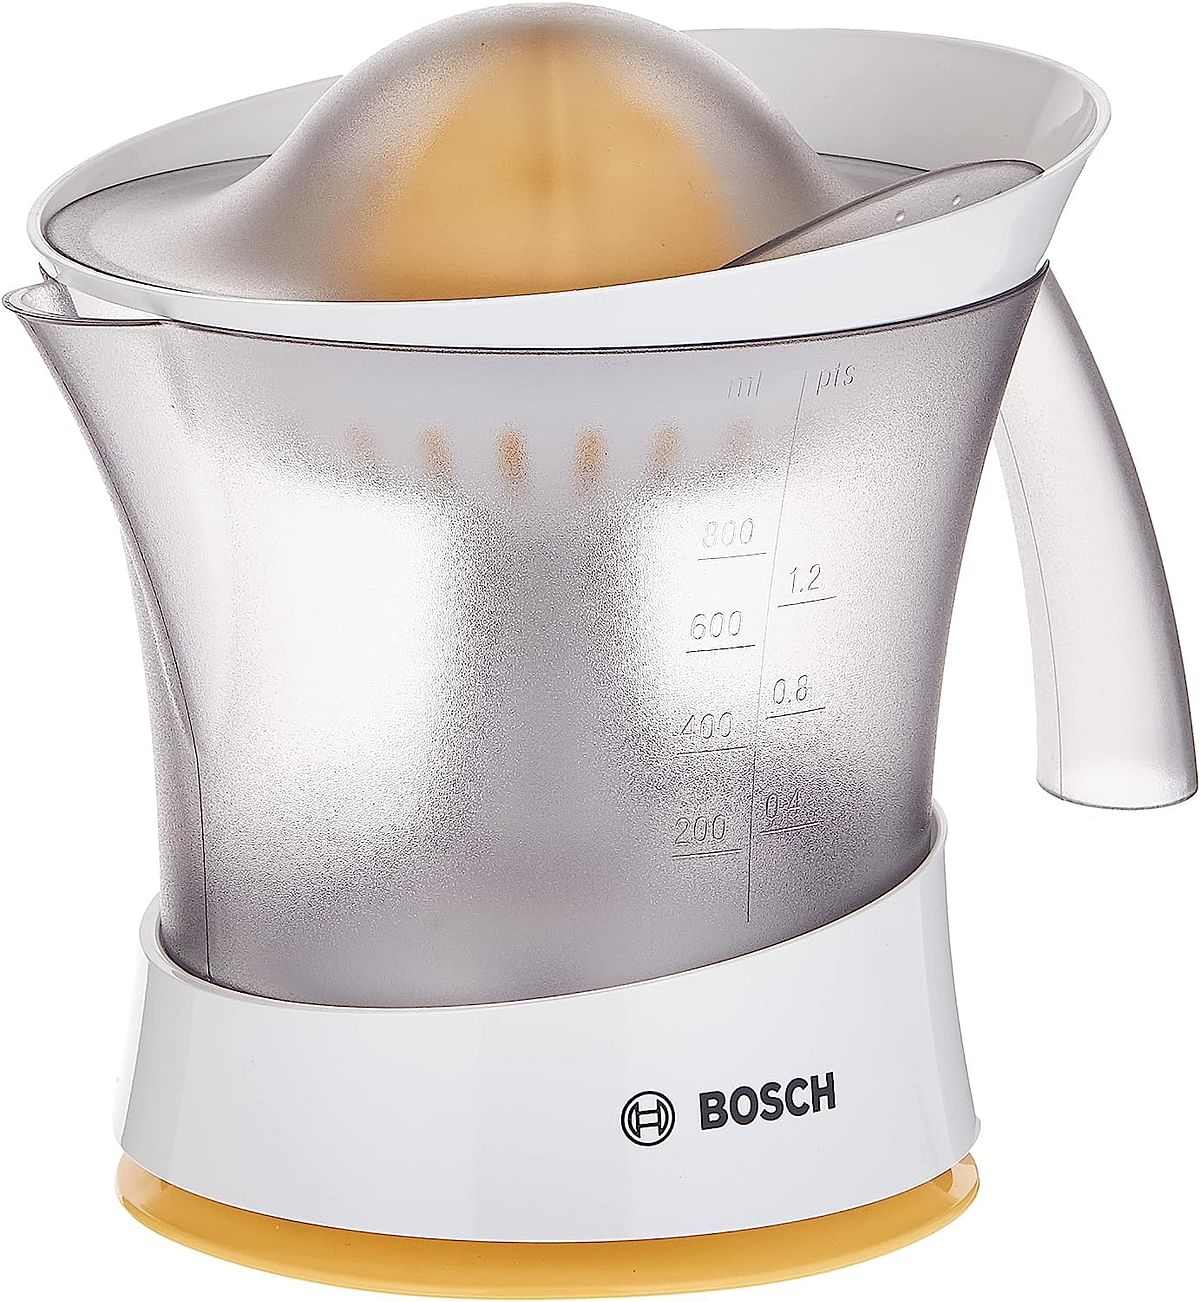 Bosch Citrus Press, Vitapress Mcp3000Ngb, White